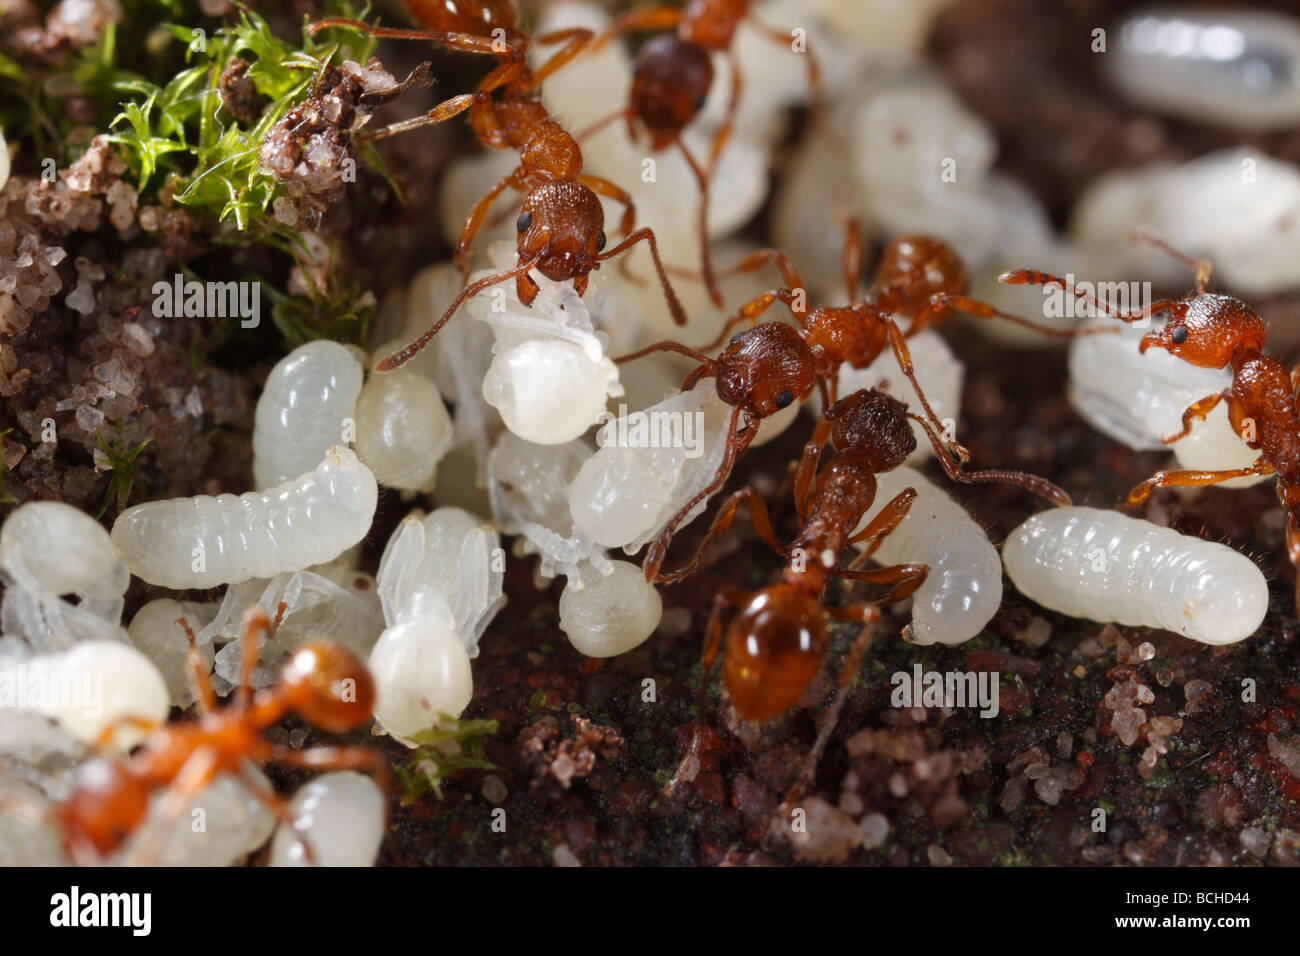 Ameisen der Gattung Myrmica bringen ihre Larven und Puppen zurück unter der  Erde, nachdem ihr Nest gestört wurde Stockfotografie - Alamy